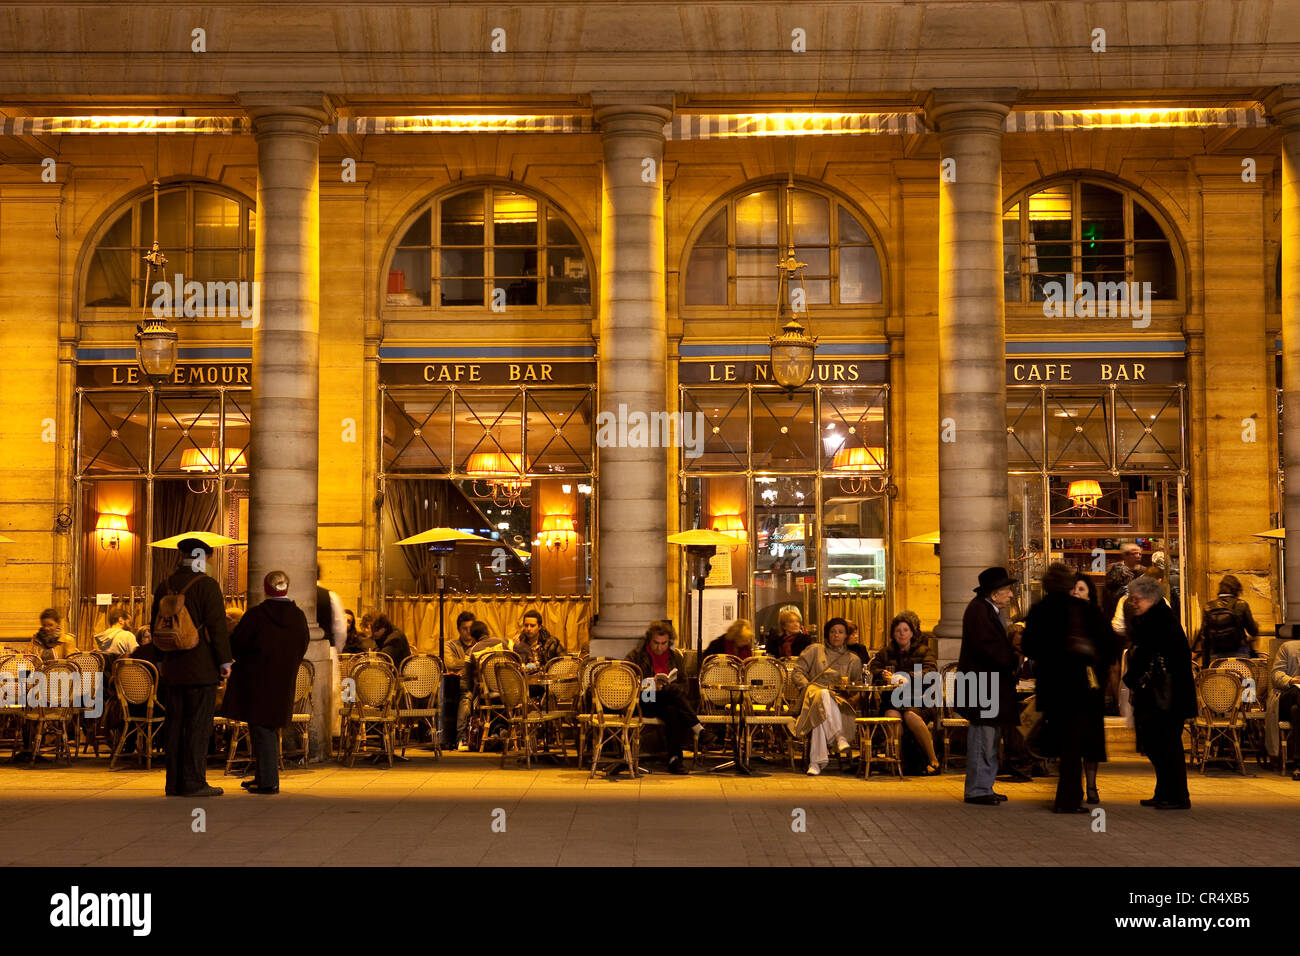 France, Paris, Place Colette, the Cafe Le Nemours Stock Photo